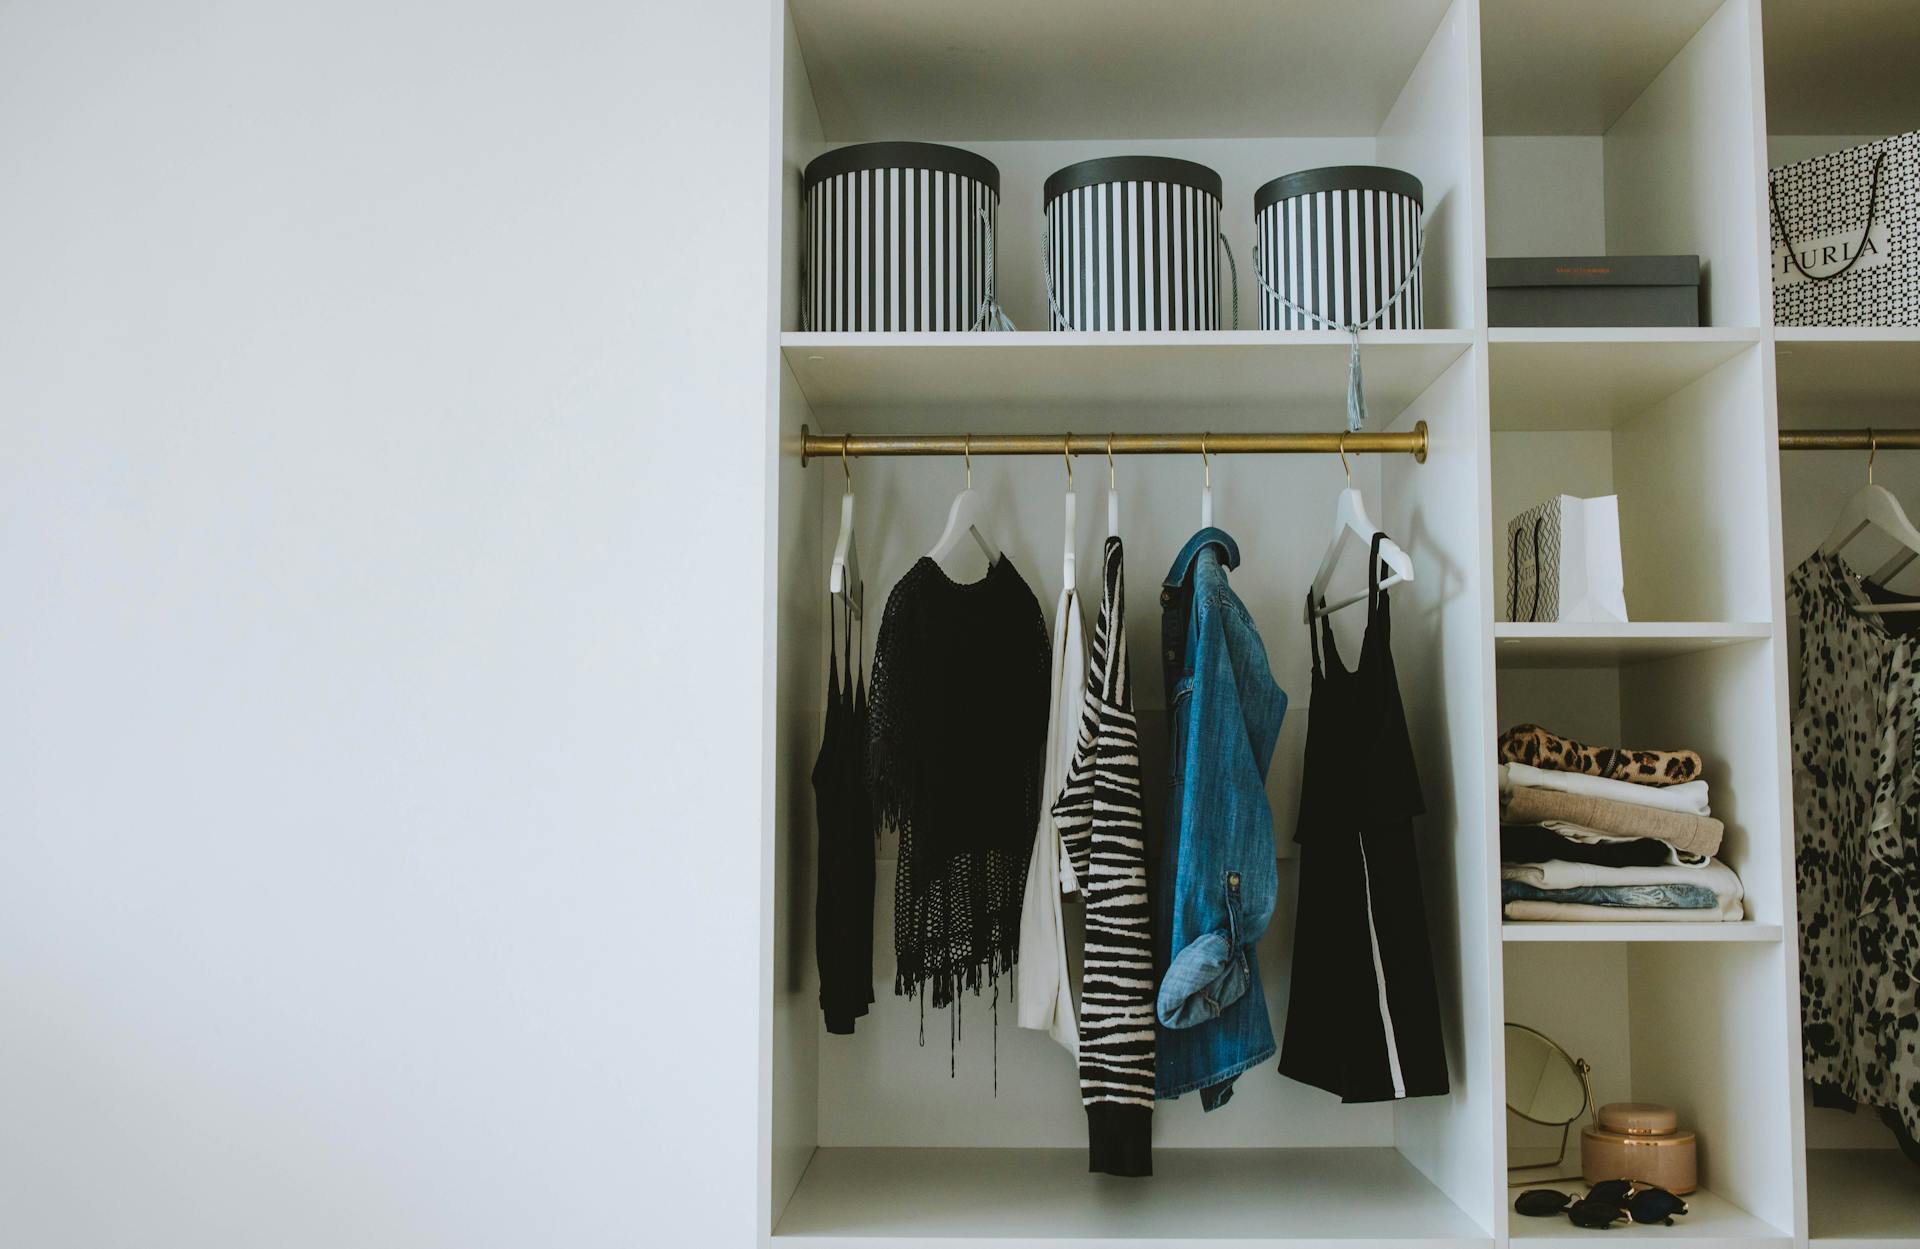 Des vêtements suspendus dans un placard | Source : Pexels